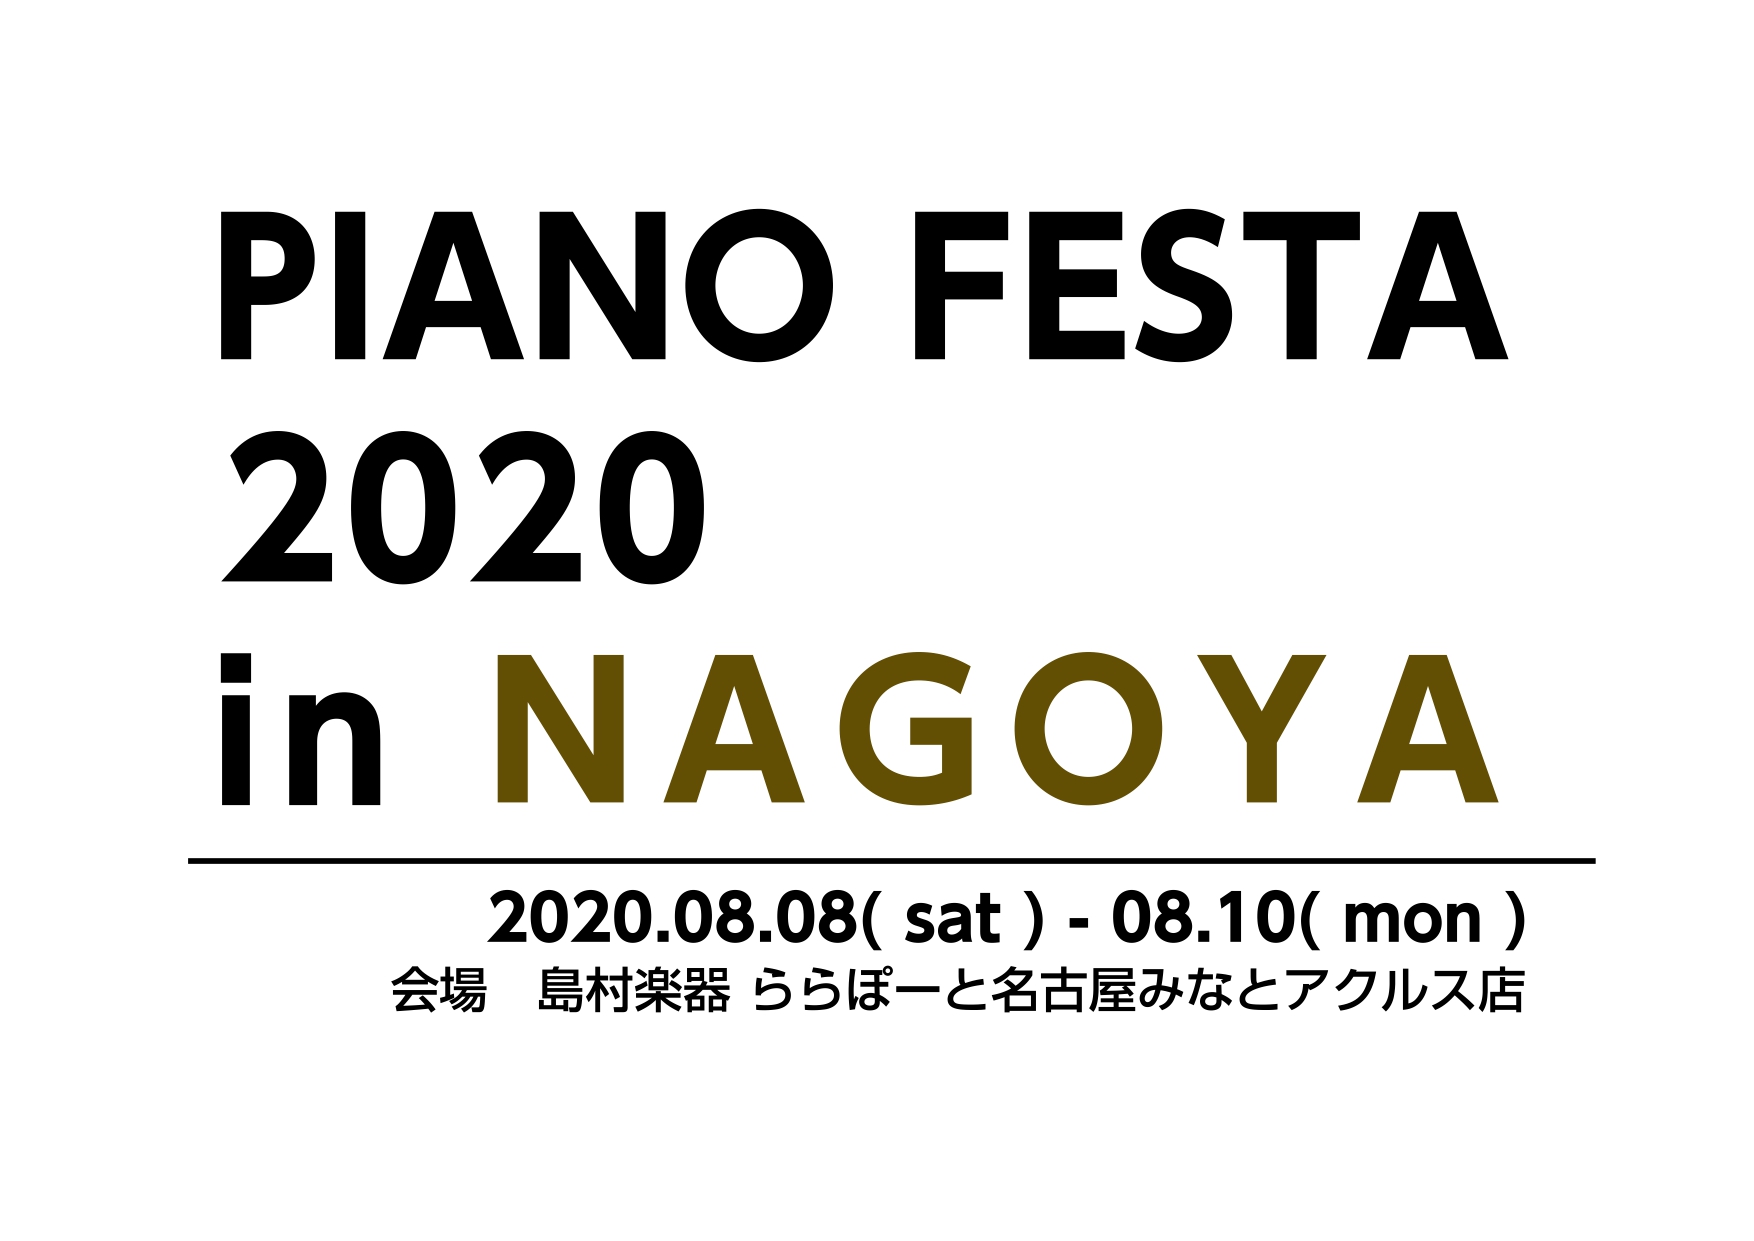 【8/8-8/10 ピアノフェスタ開催のお知らせ】～総台数80台超えの東海地区最大のピアノ大展示会～